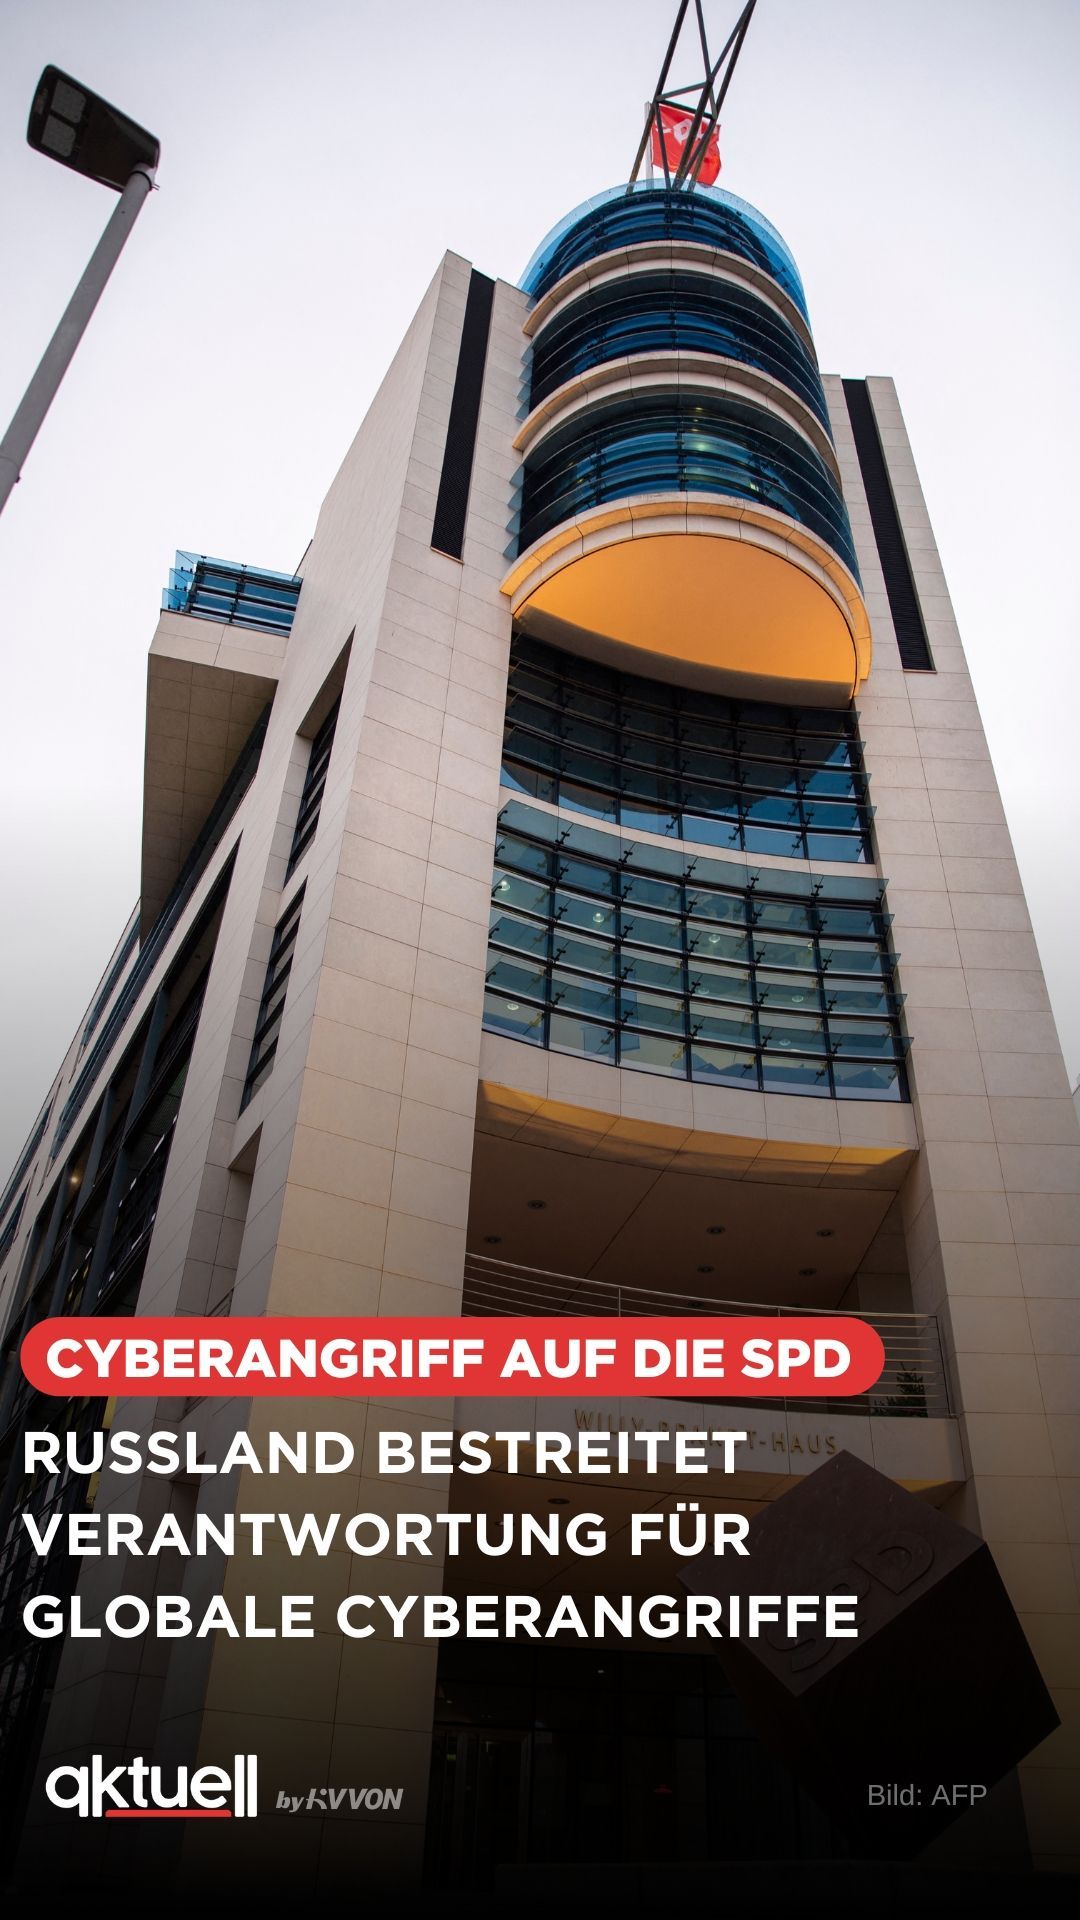 Deutschland und Tschechien machen Russland für Cyberangriffe verantwortlich